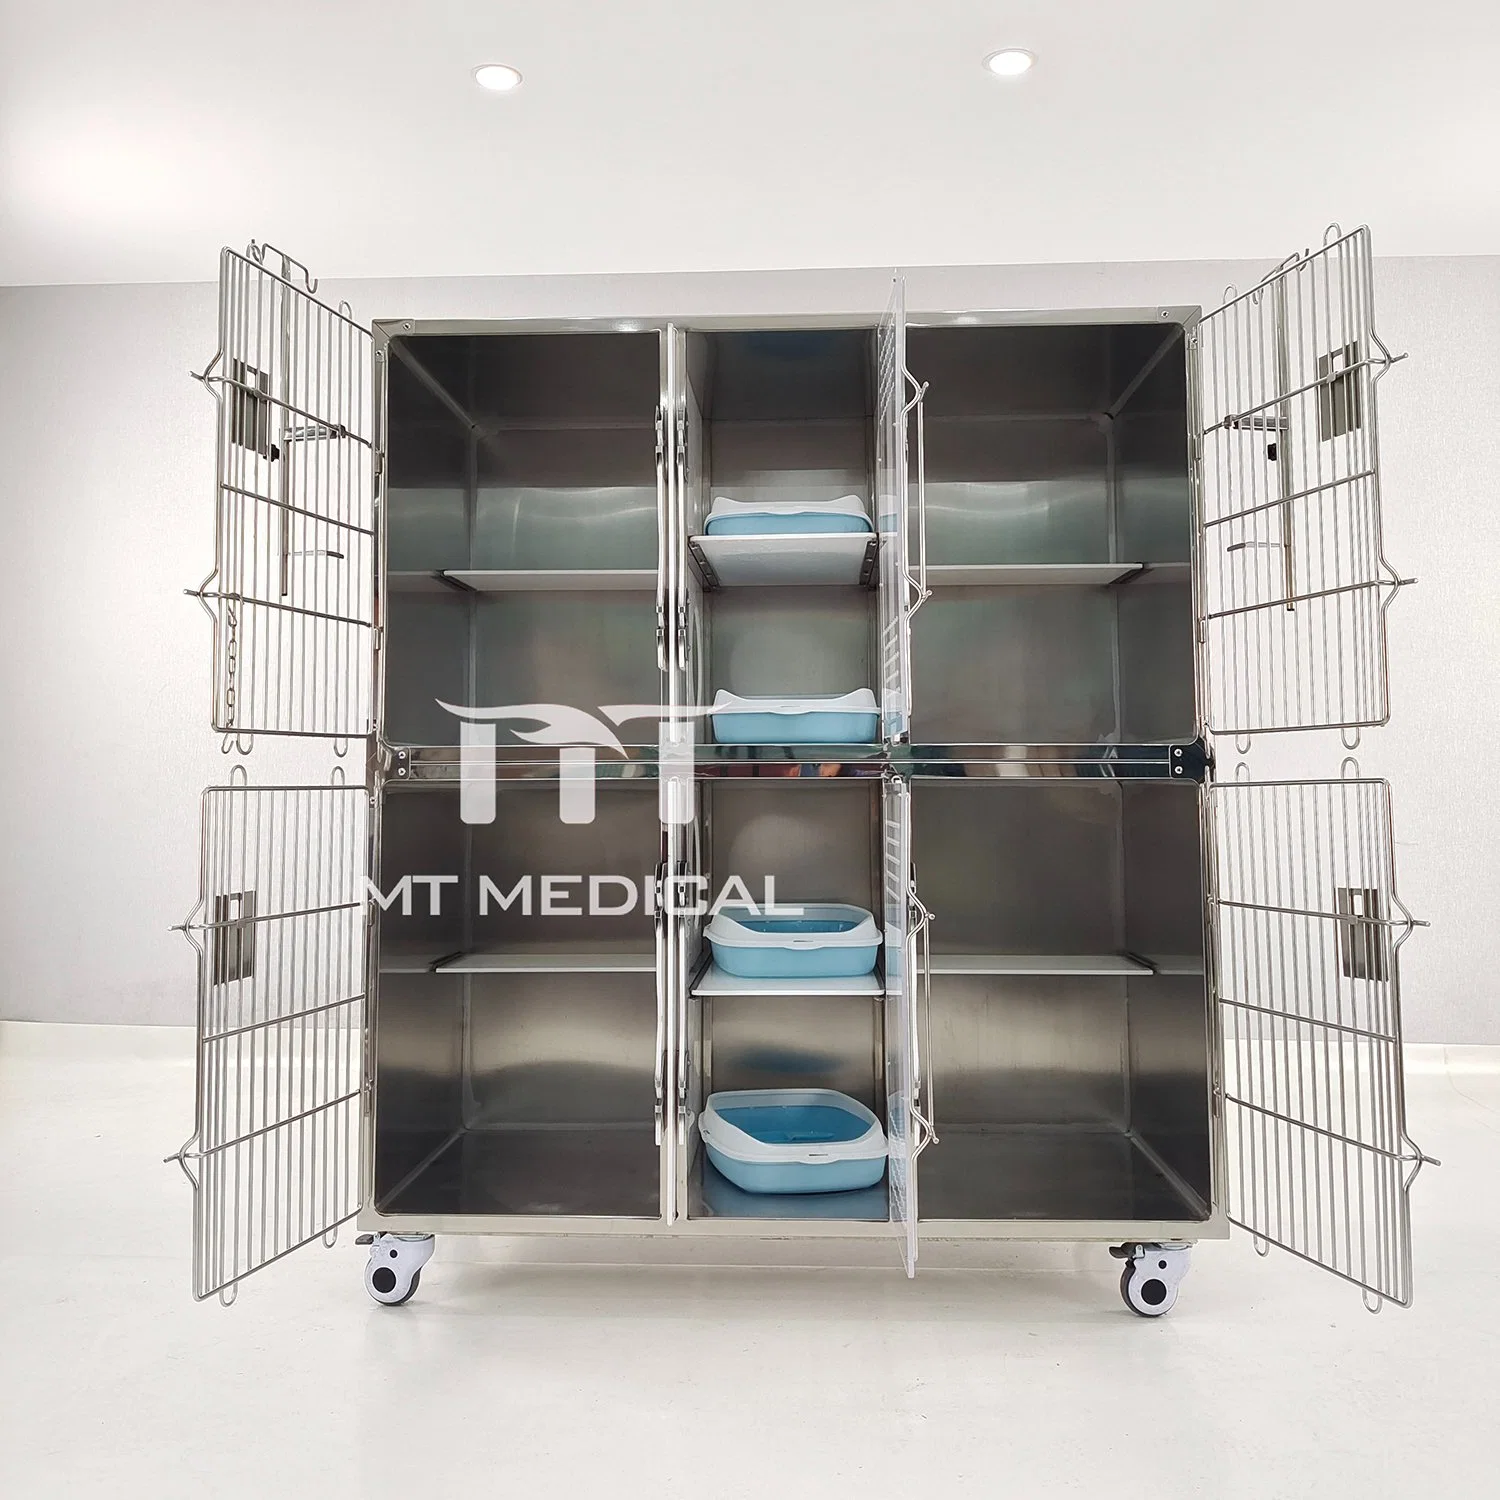 MT Medical PET Hospital Новый дизайн роскошный отдельный корпус из нержавеющей стали PET клетки другие клетки PET